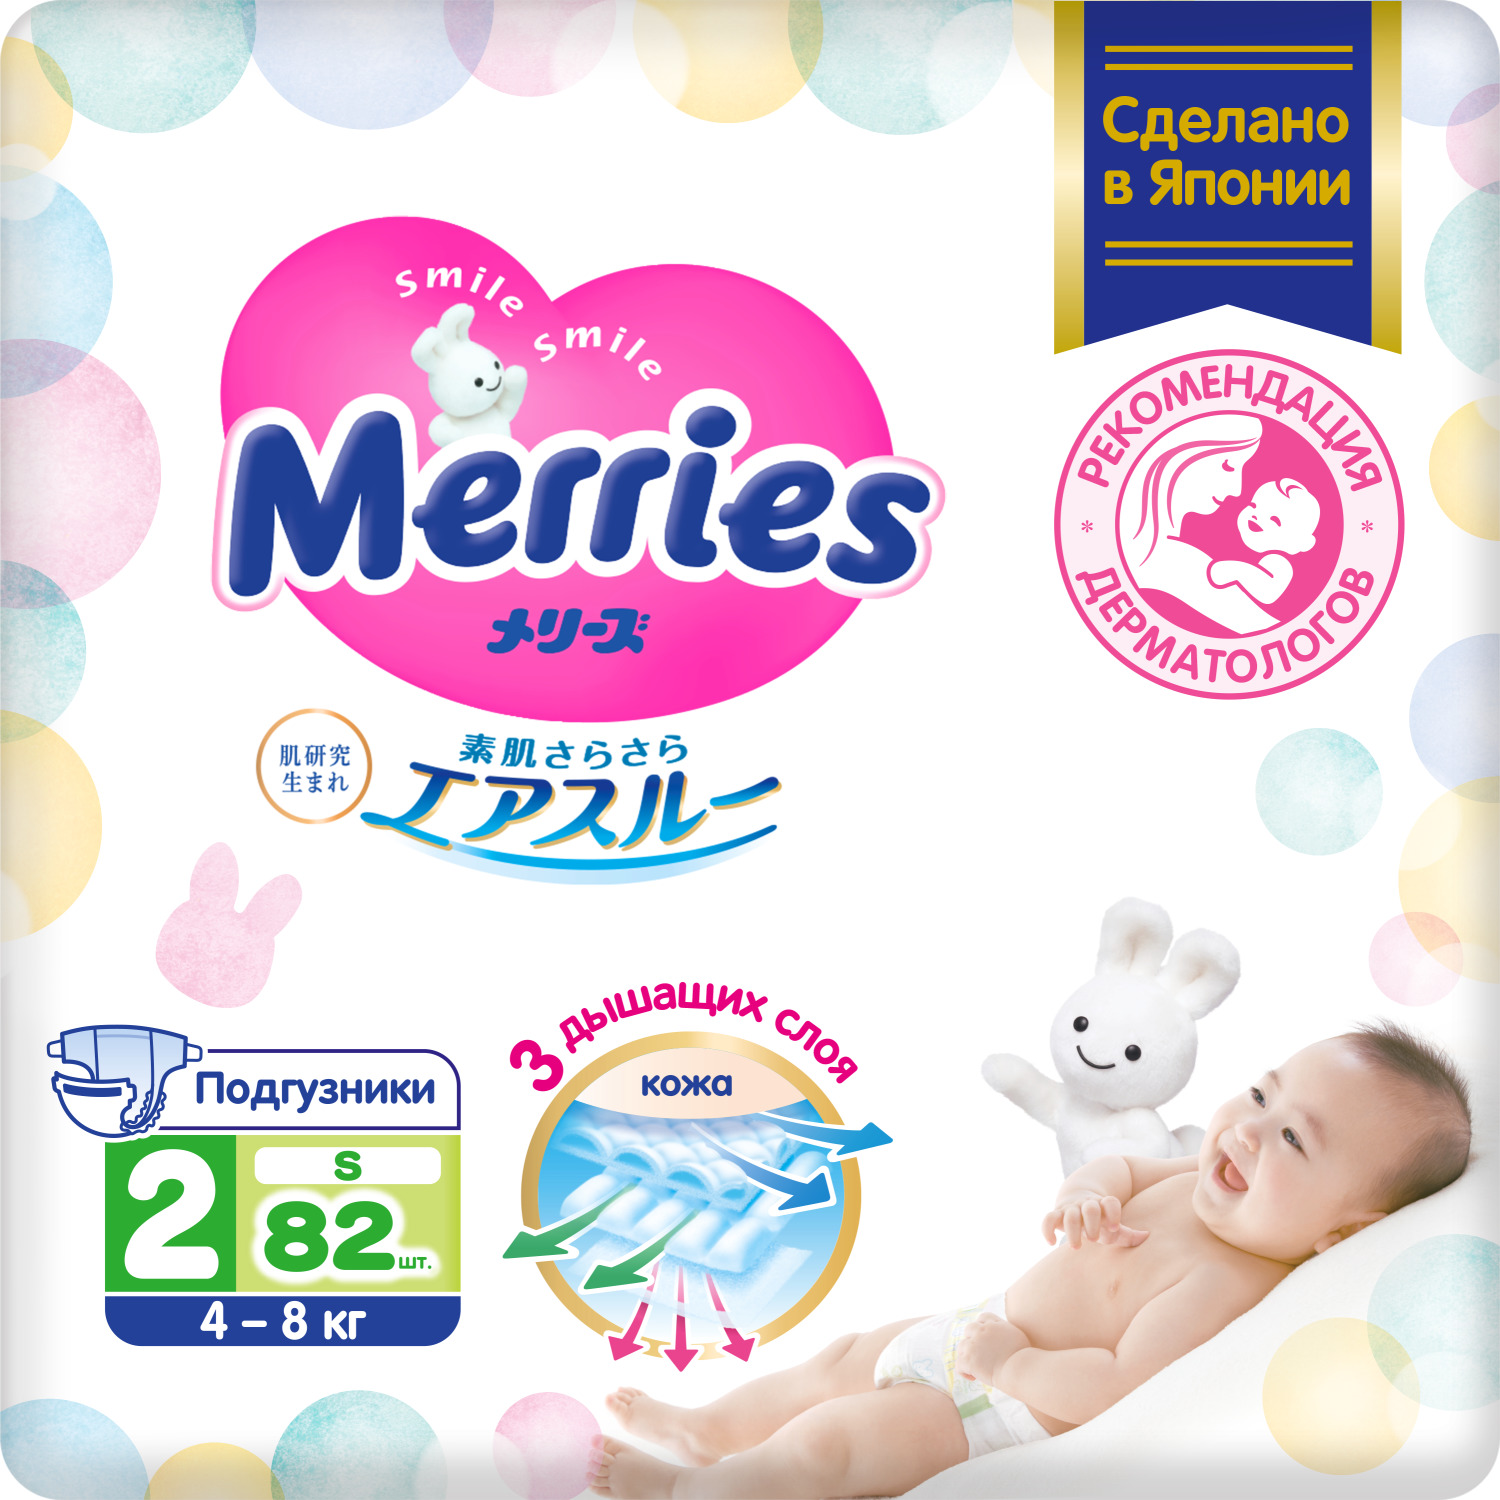 цена Подгузники Merries для детей размер S 4-8 кг, 82 шт